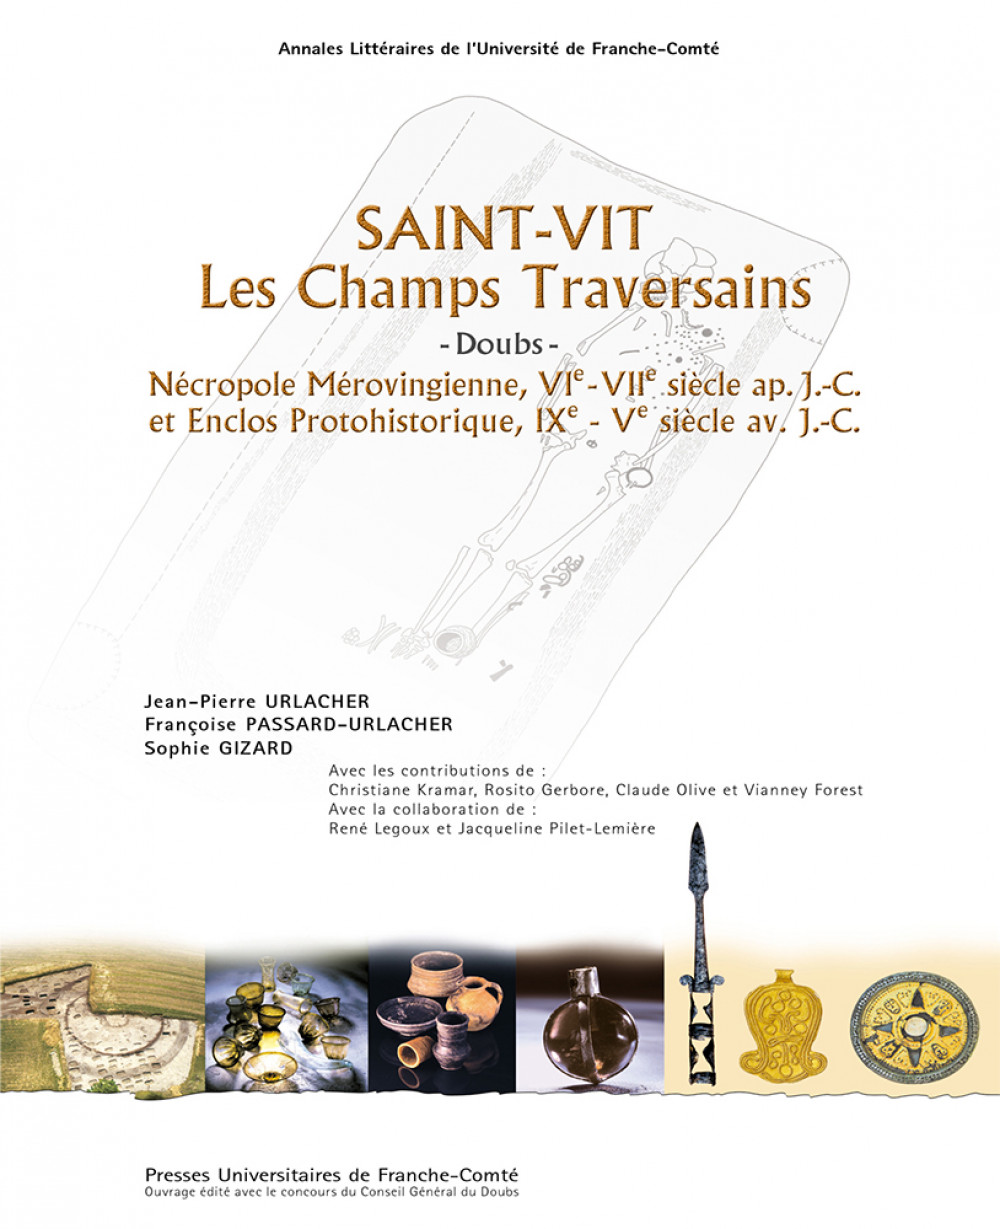 Saint-Vit. "Les Champs Traversains" (Doubs)